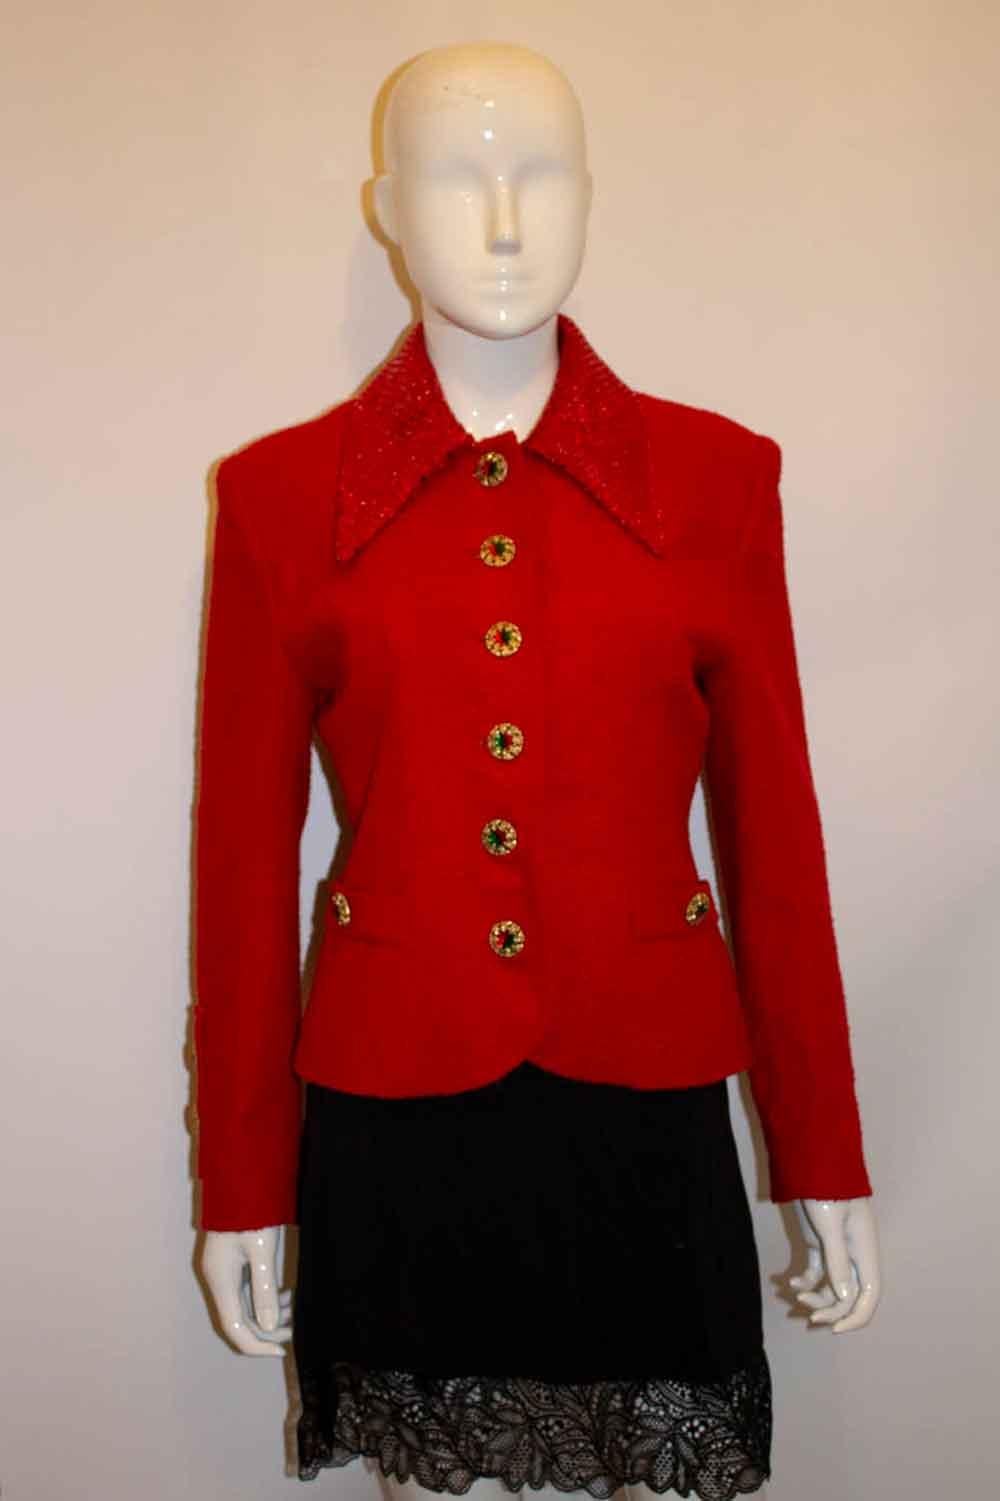 Eine wunderbare Jacke für die festliche Jahreszeit. Die rote Jacke  hat einen mit Pailletten besetzten Dolchkragen,  und atemberaubende Knöpfe in Rot und Grün.  Maße Oberweite bis zu 36'', Länge 21''